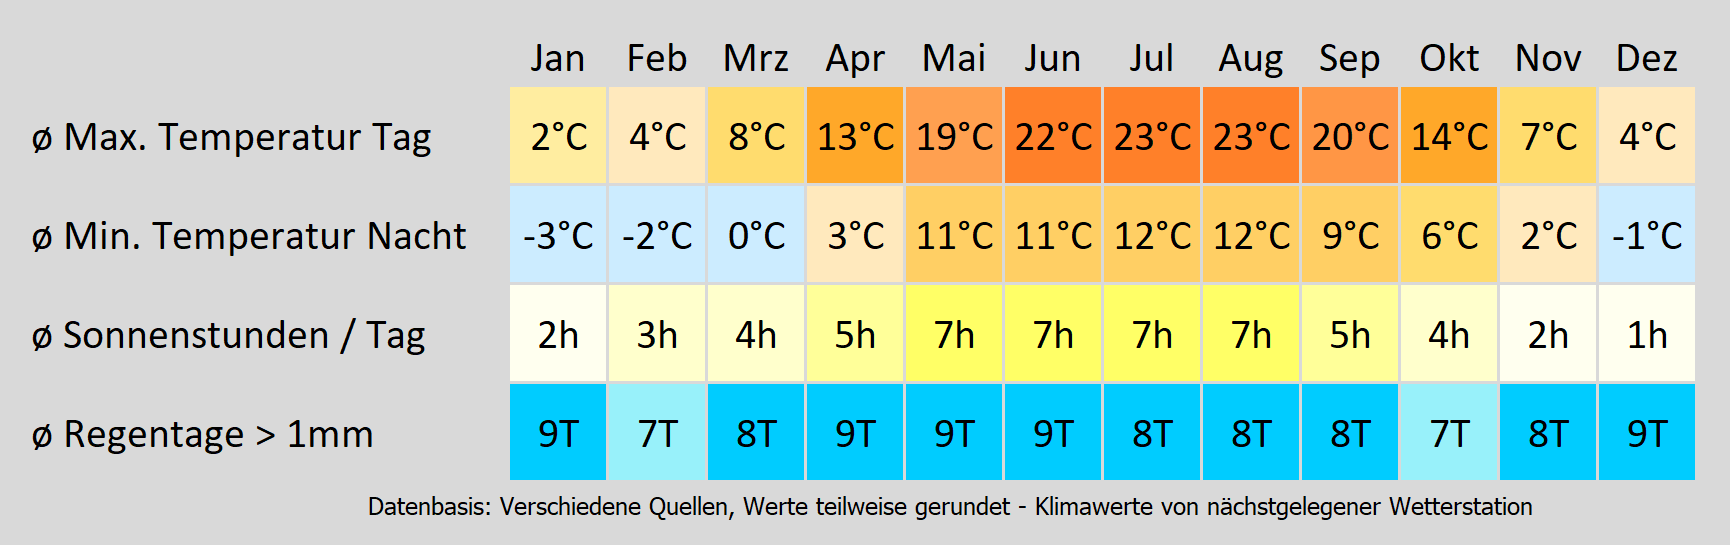 Wohnmobil mieten in Berlin - wie wird das Wetter? Mit der Klimakarte können Sie sich informieren!